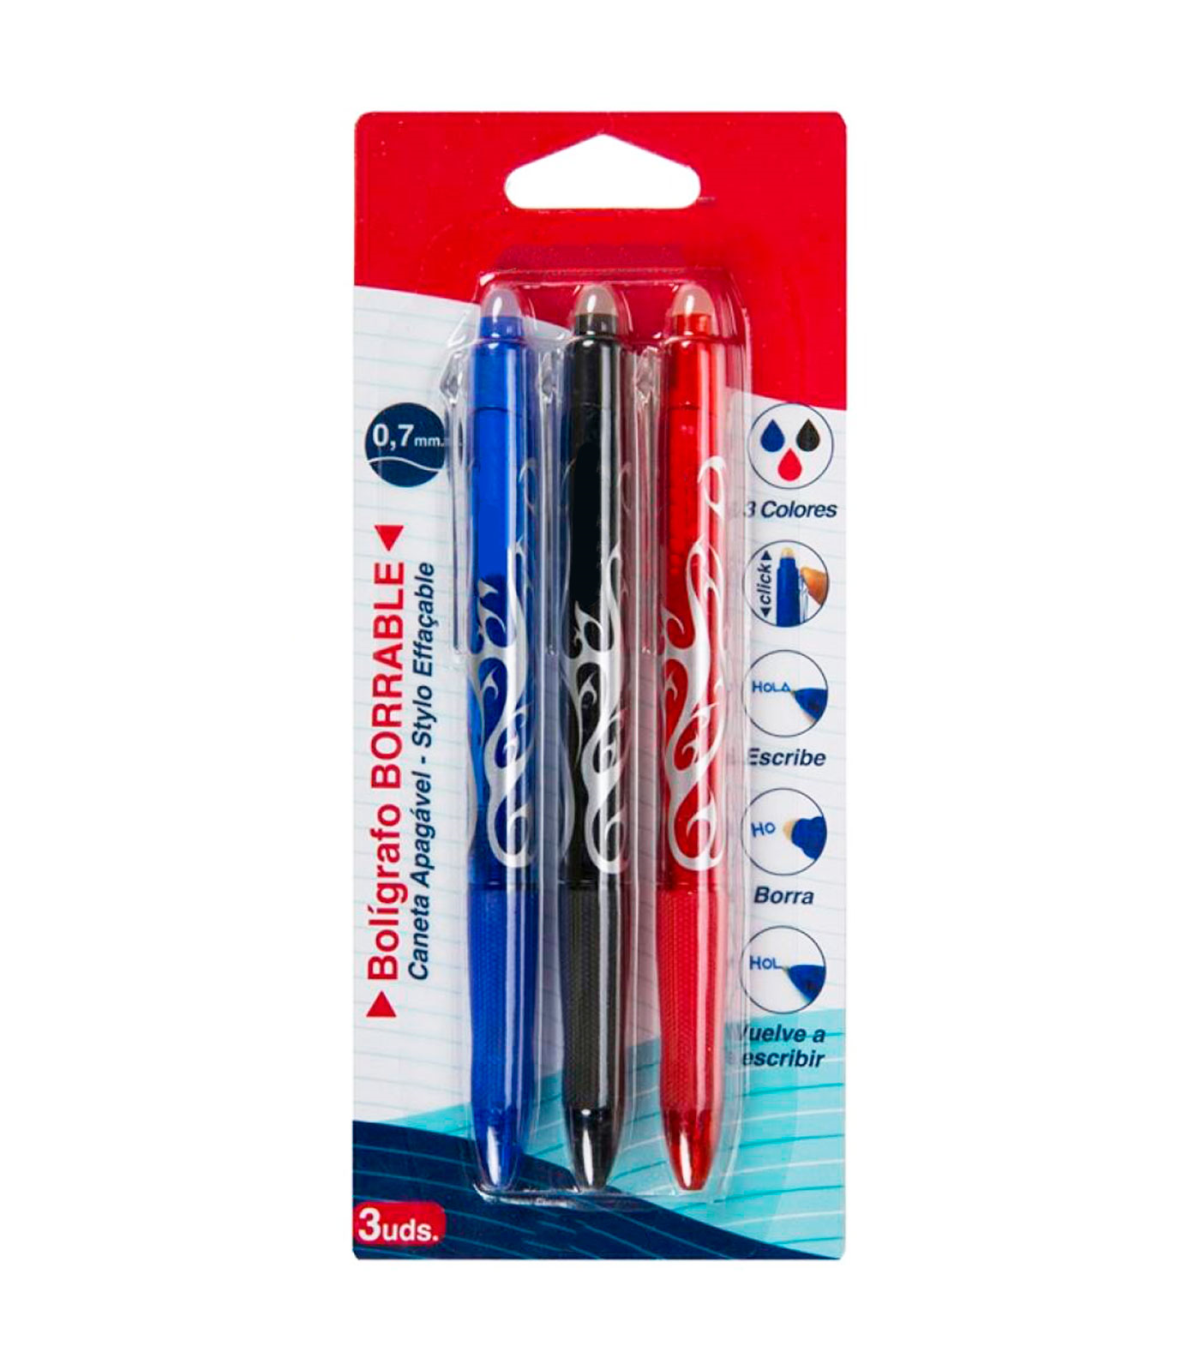 Tradineur - Pack de 3 bolígrafos borrables de colores, punta